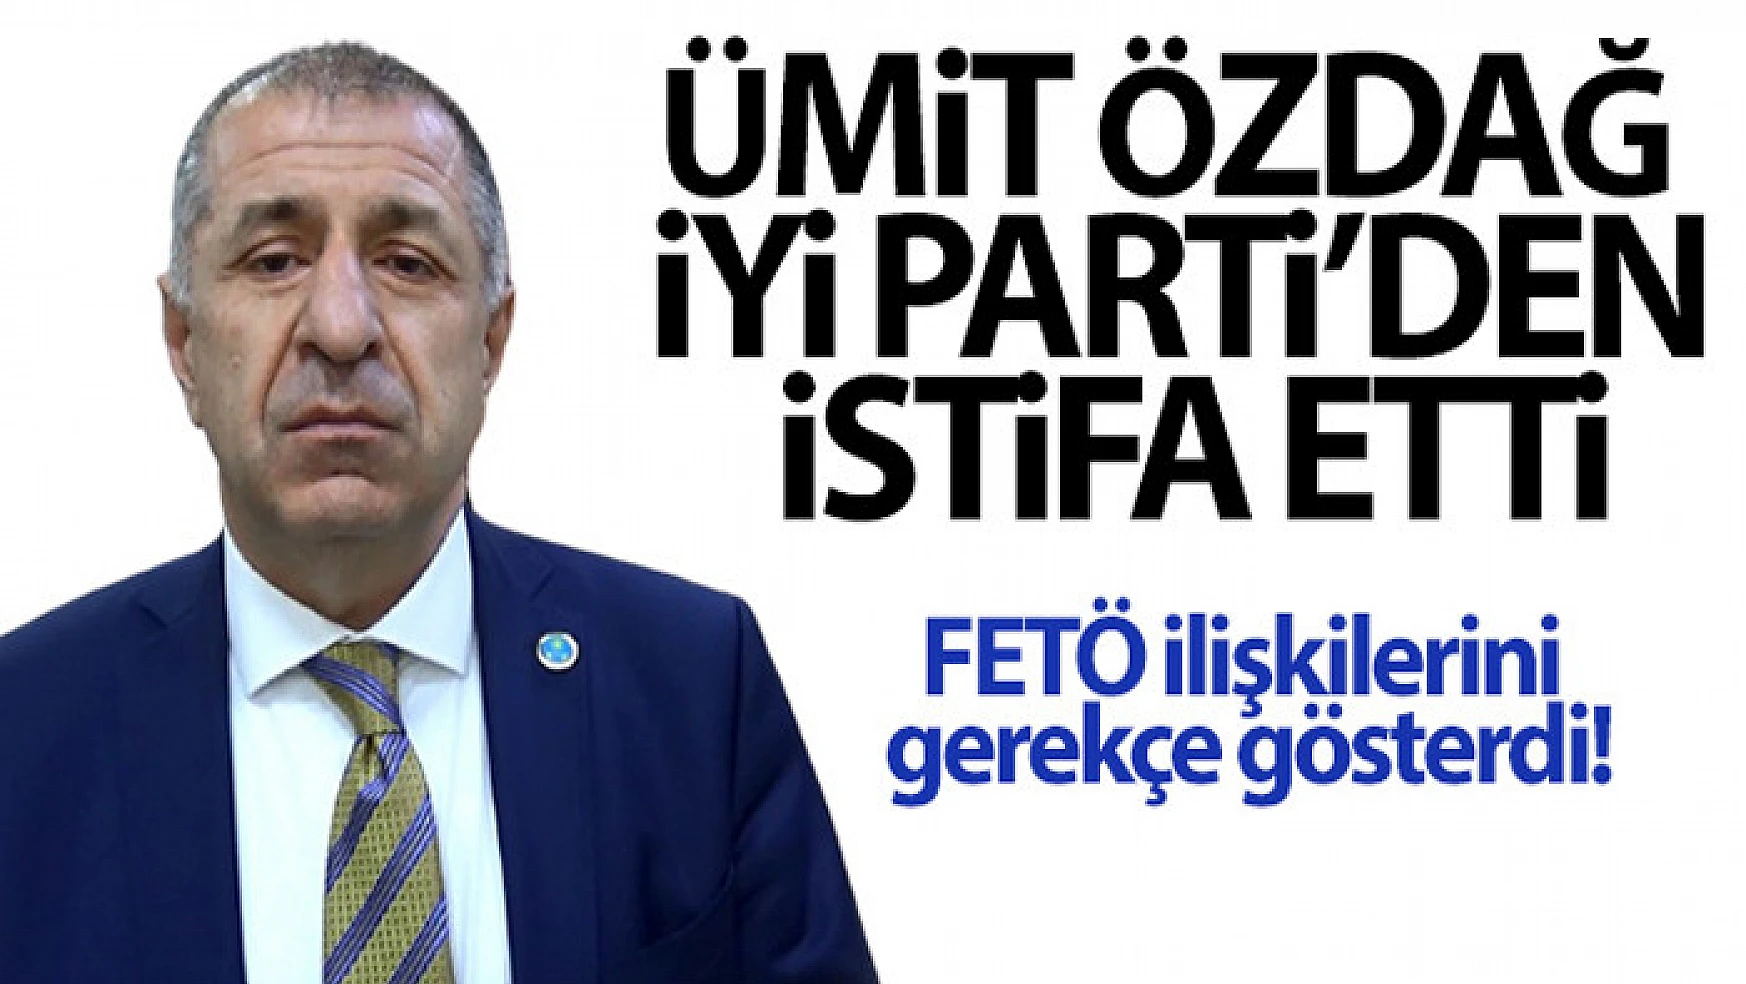 Ümit Özdağ, FETÖ ilişkilerini gerekçe göstererek İYİ Parti'den istifa etti